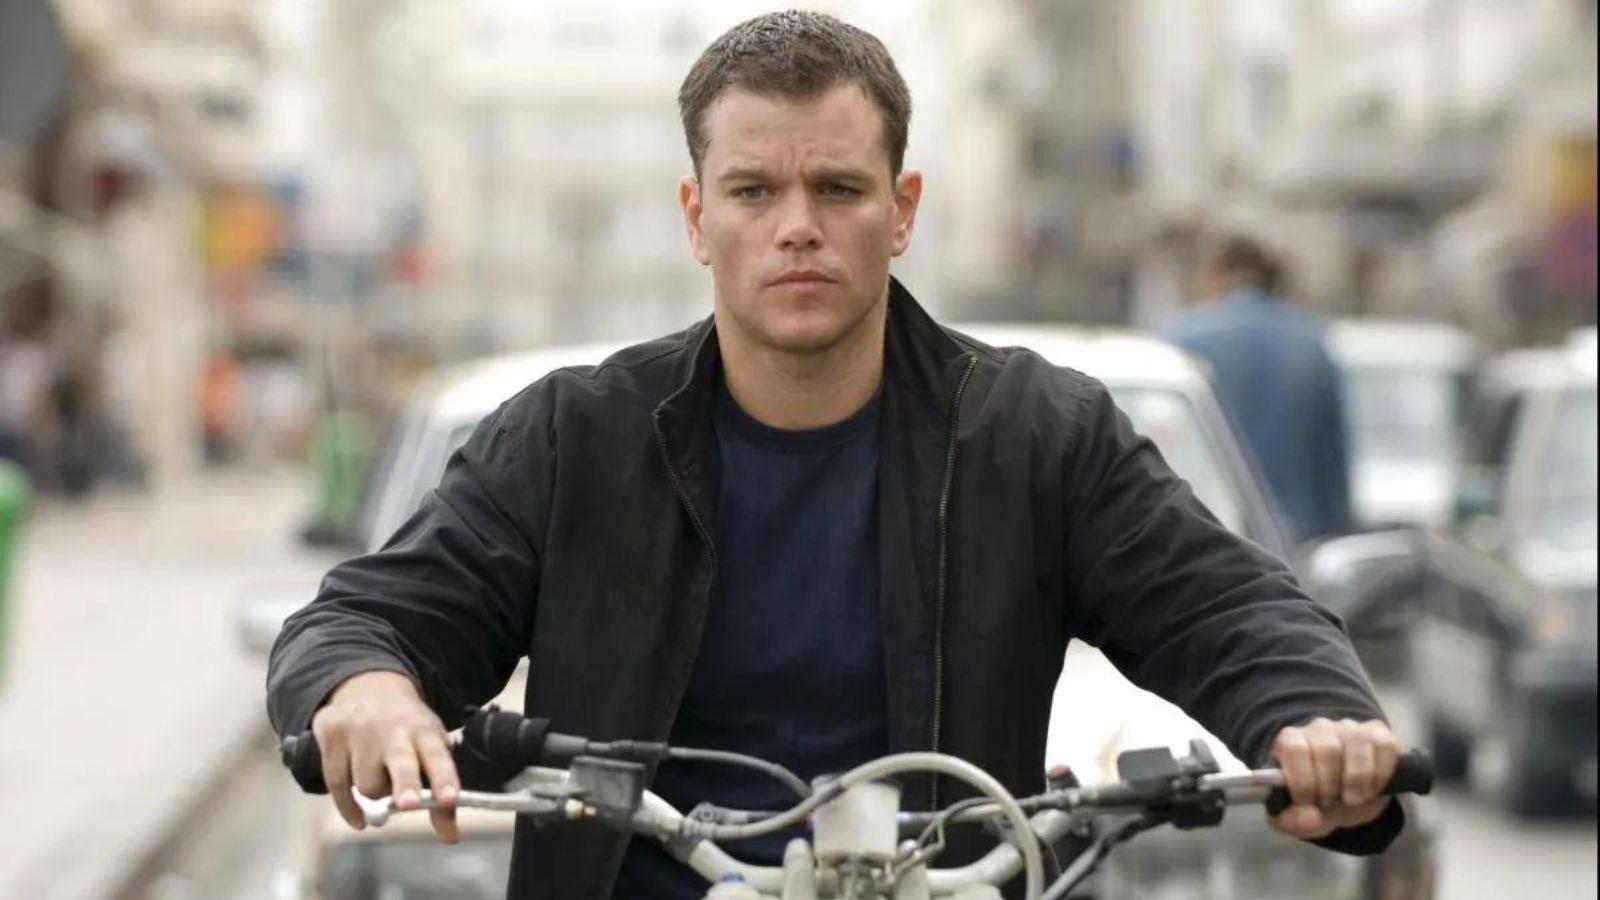 Jason Bourne header